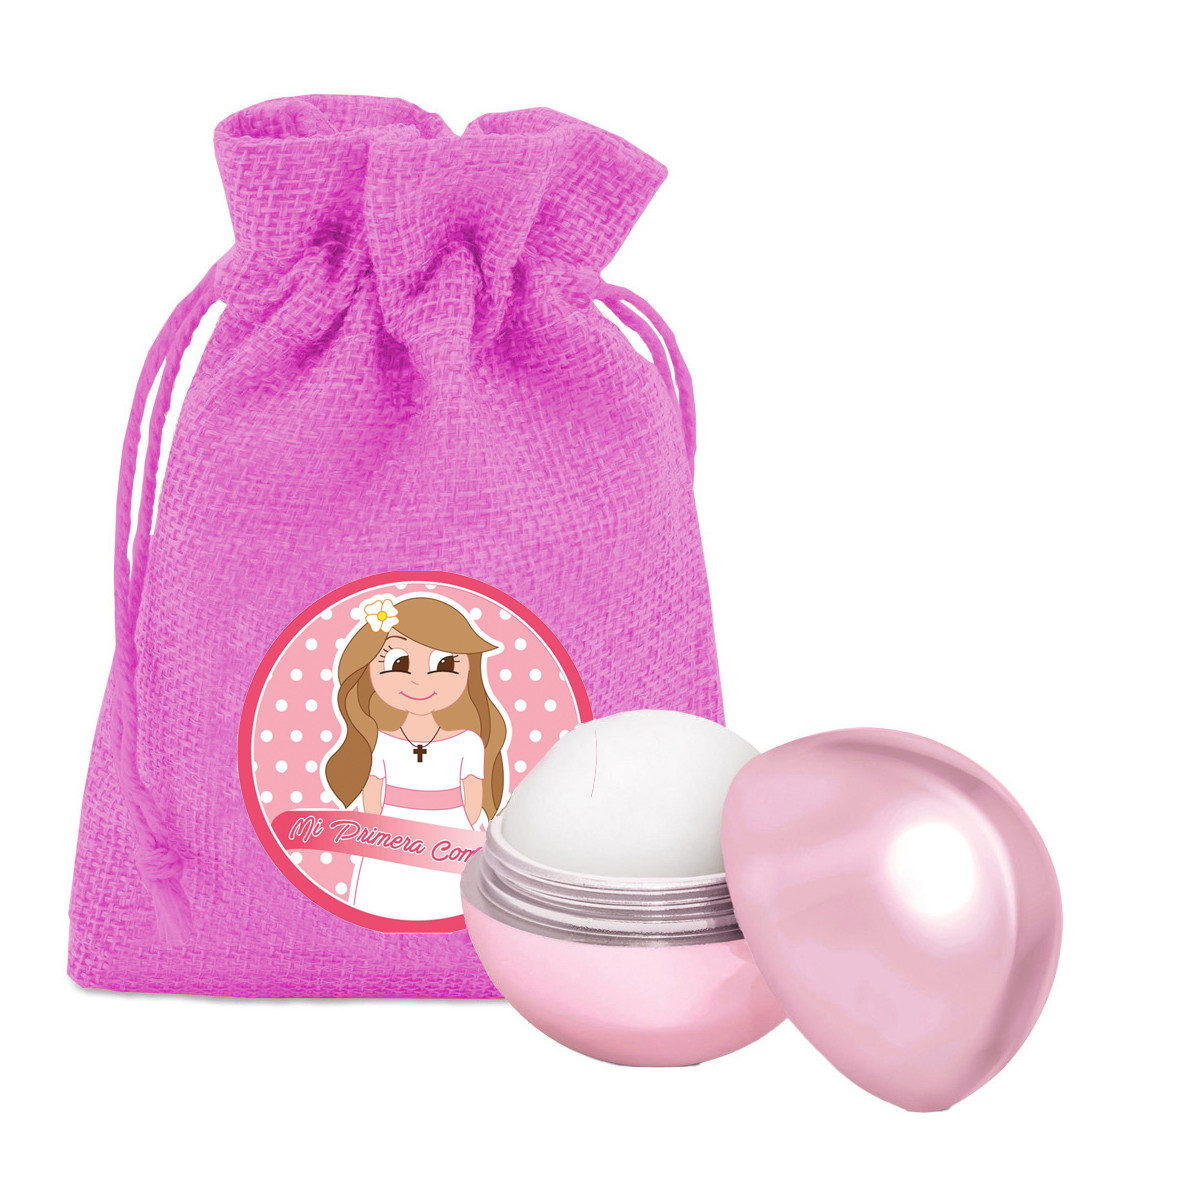 Balsamo per le labbra con sacchetto rosa e adesivo per la comunione delle ragazze